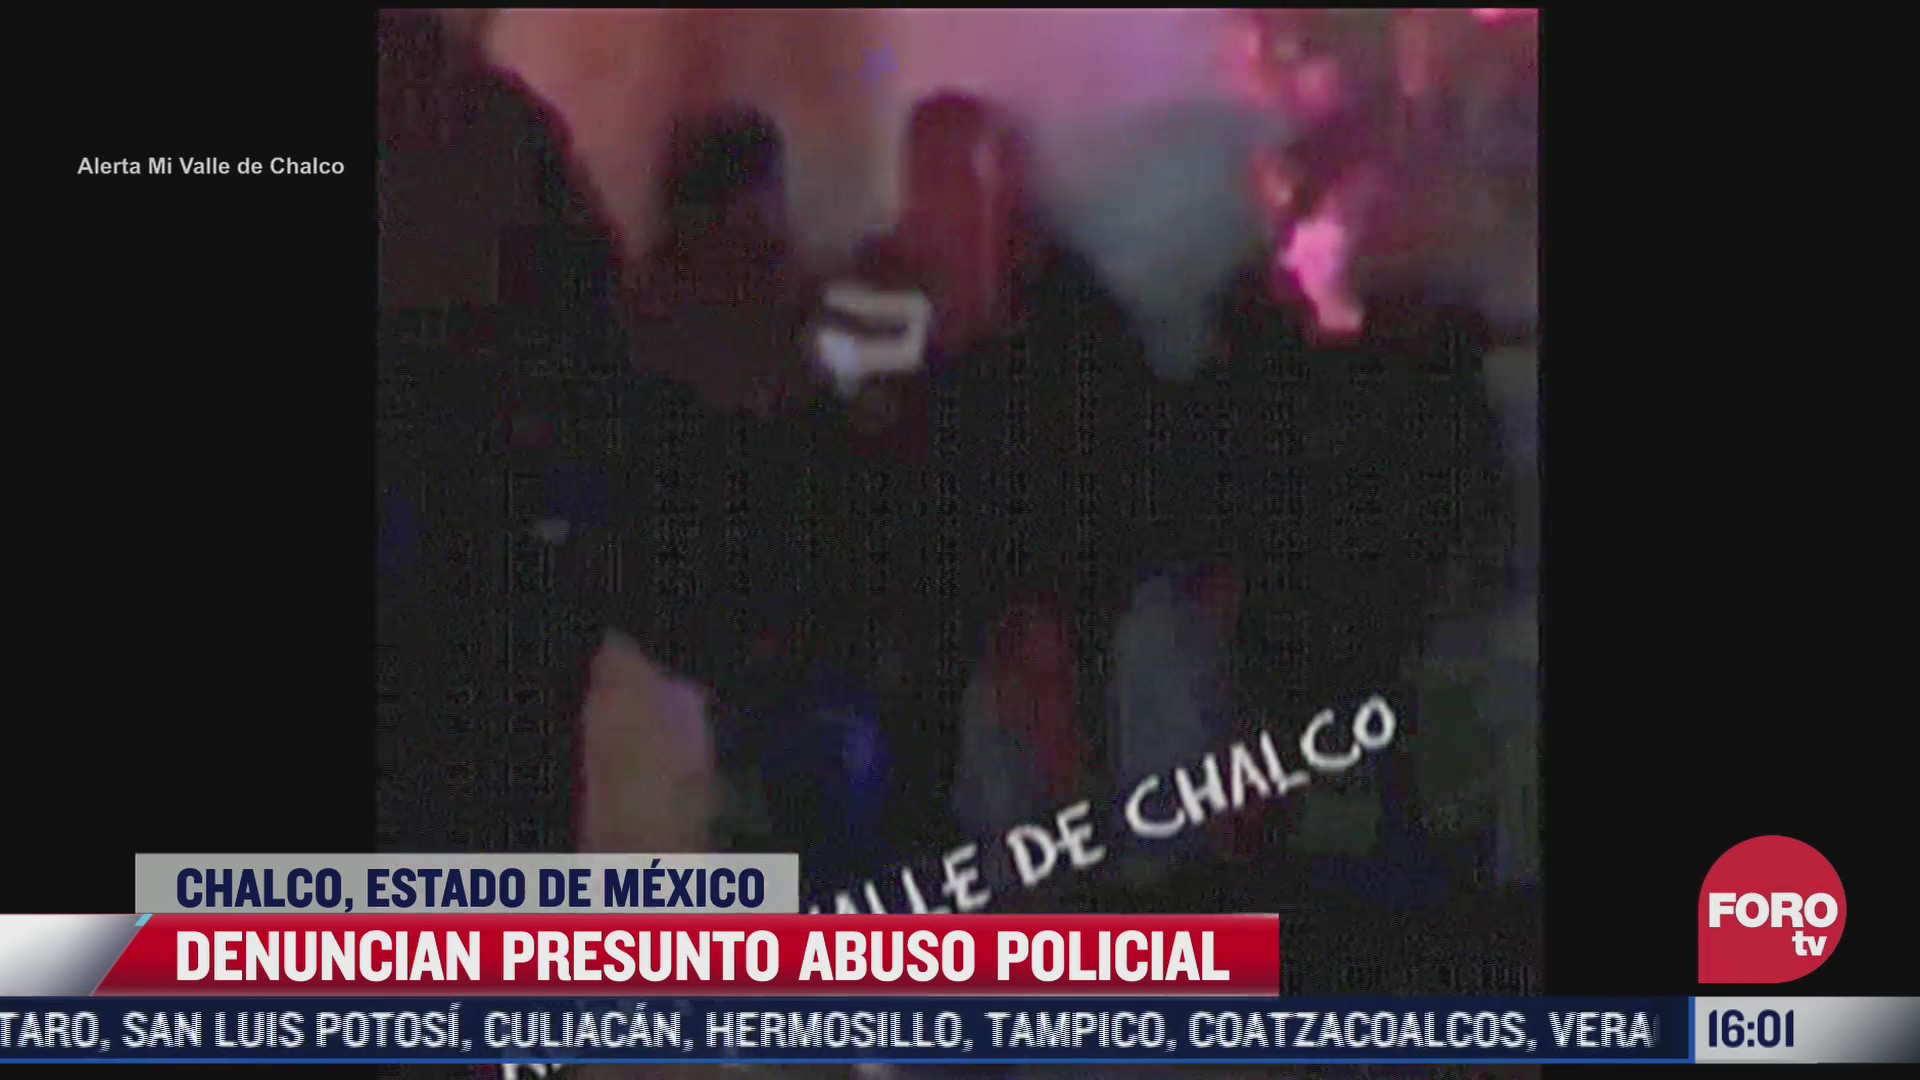 denuncian presunto abuso policial en chalco estado de mexico